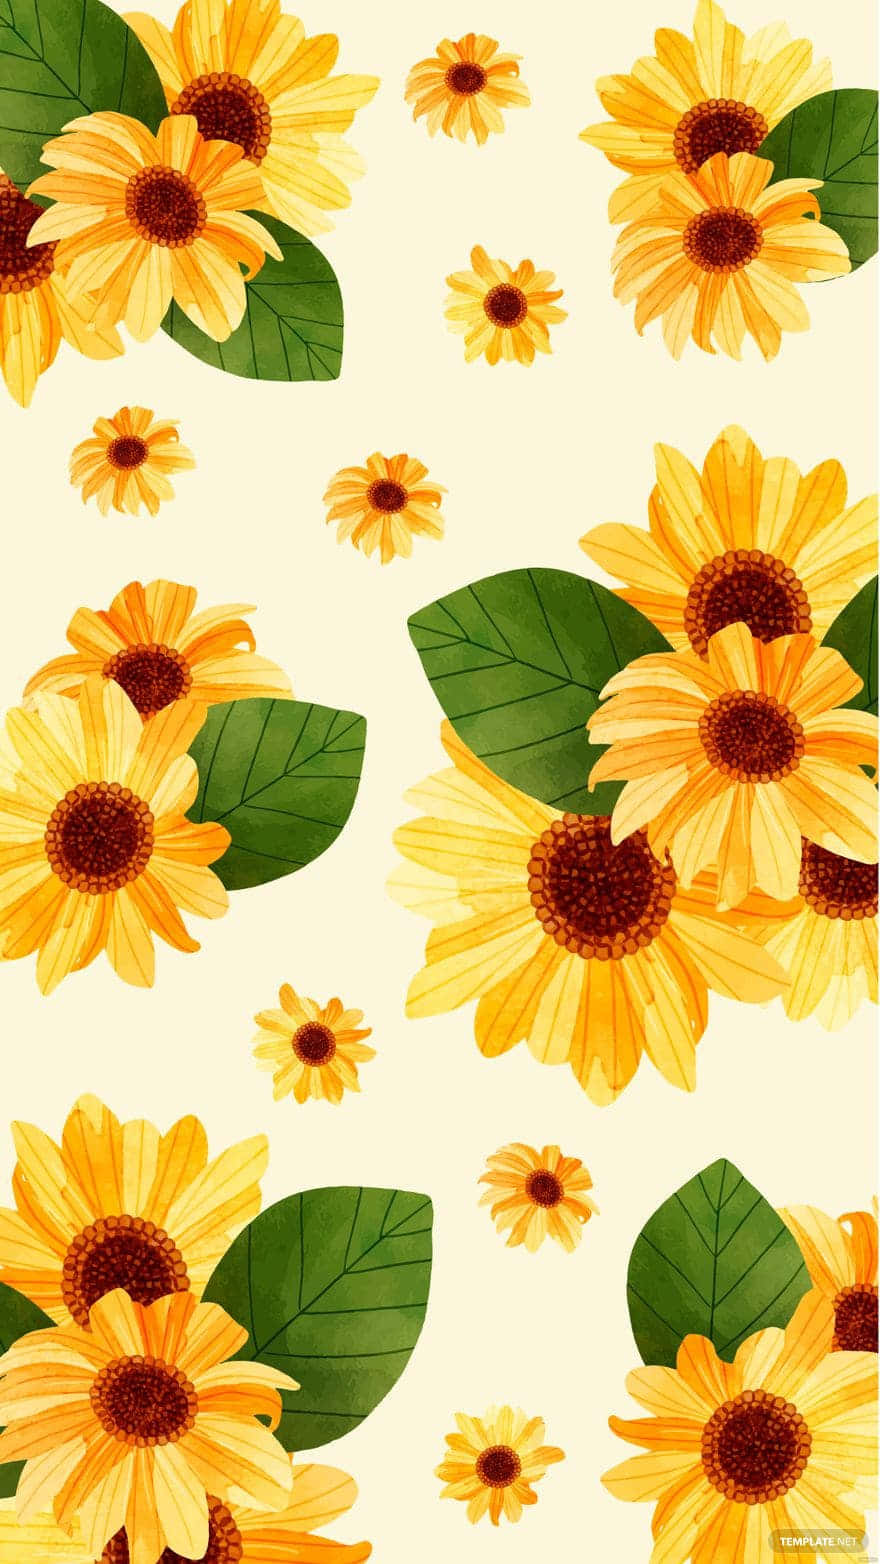 Sunflowers Wallpaper - Wallpapers Wallpaper